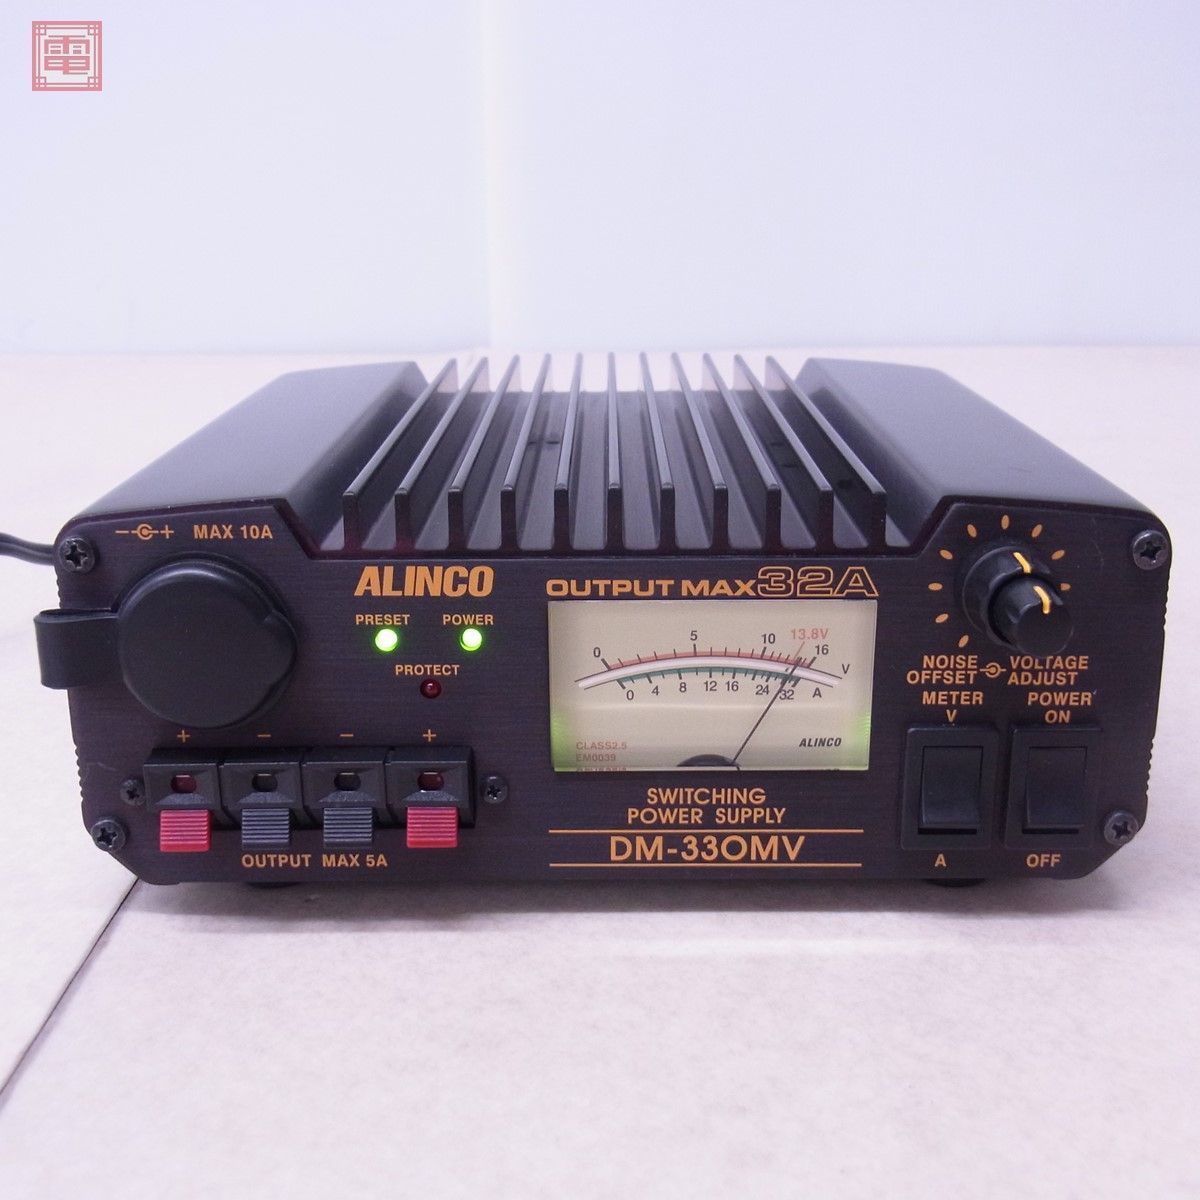 ALINCO アルインコ DM-330MV DC5V〜15V MAX32A DC電源 直流安定化電源